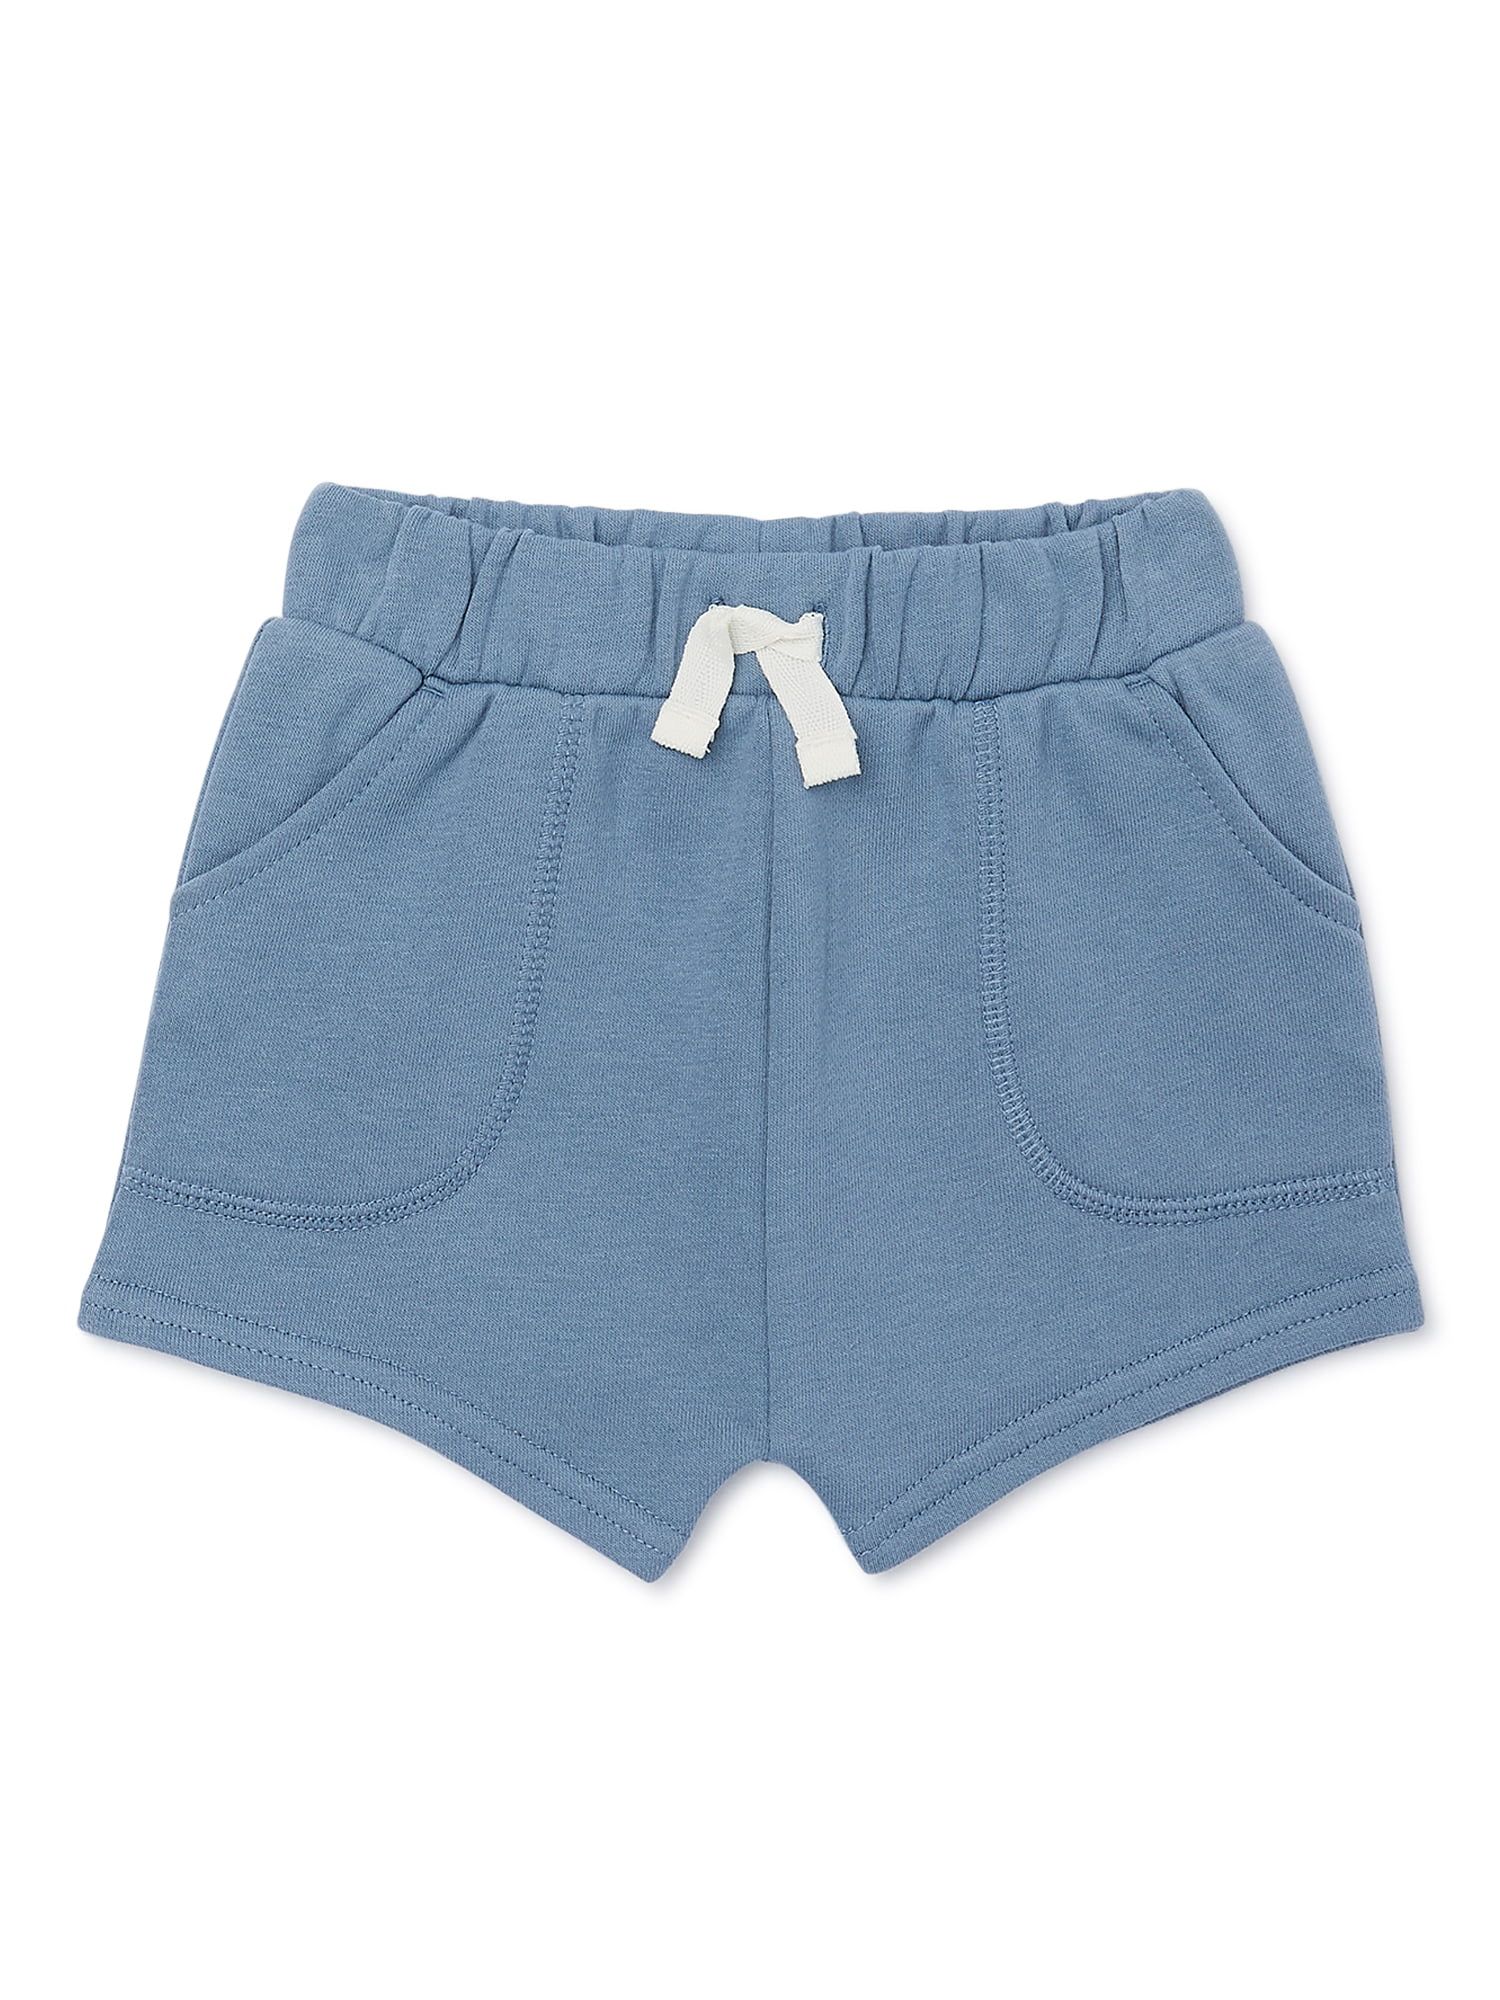 Garanimals Baby Boy French Terry Shorts, Sizes 0-24 Months - Walmart.com | Walmart (US)